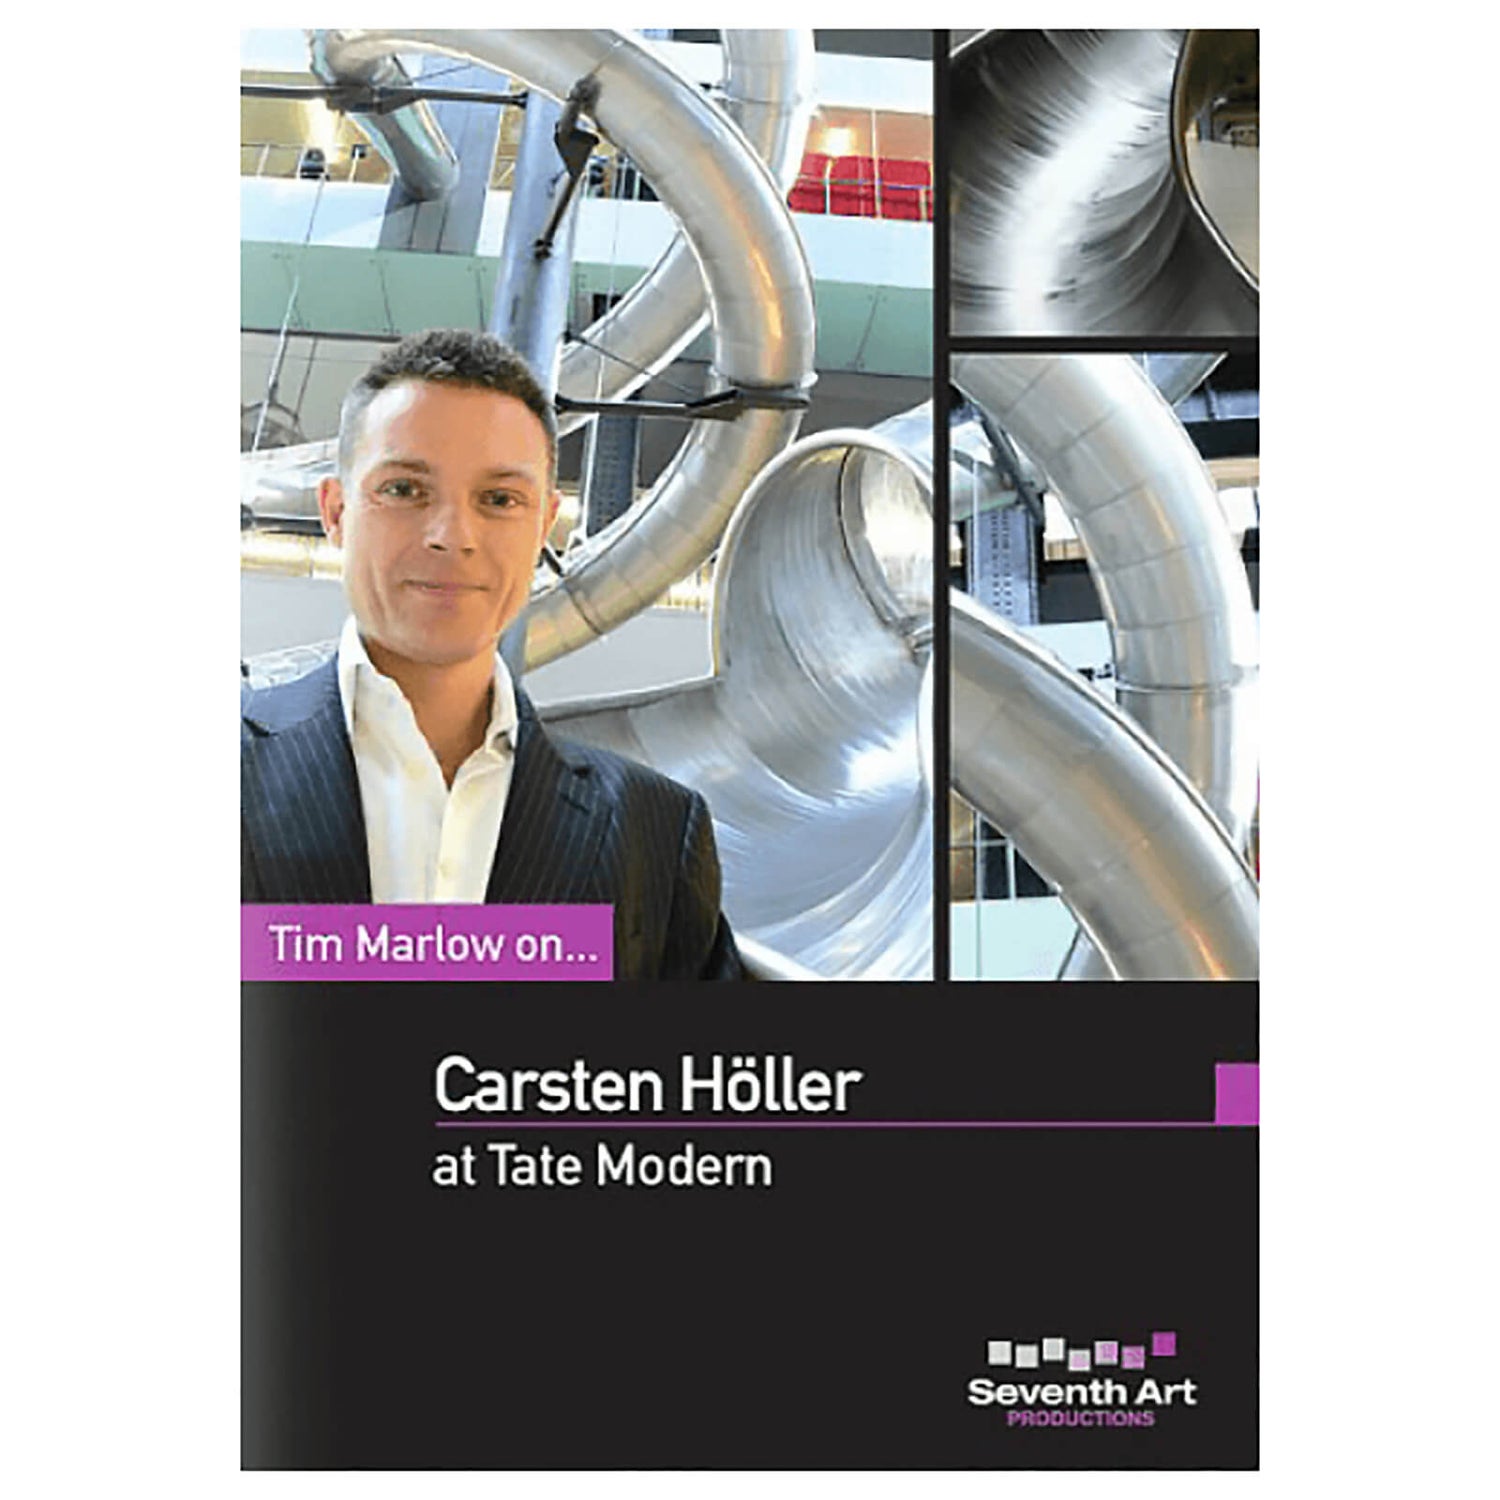 Tim Marlow On... Carsten Holler At Tate Modern